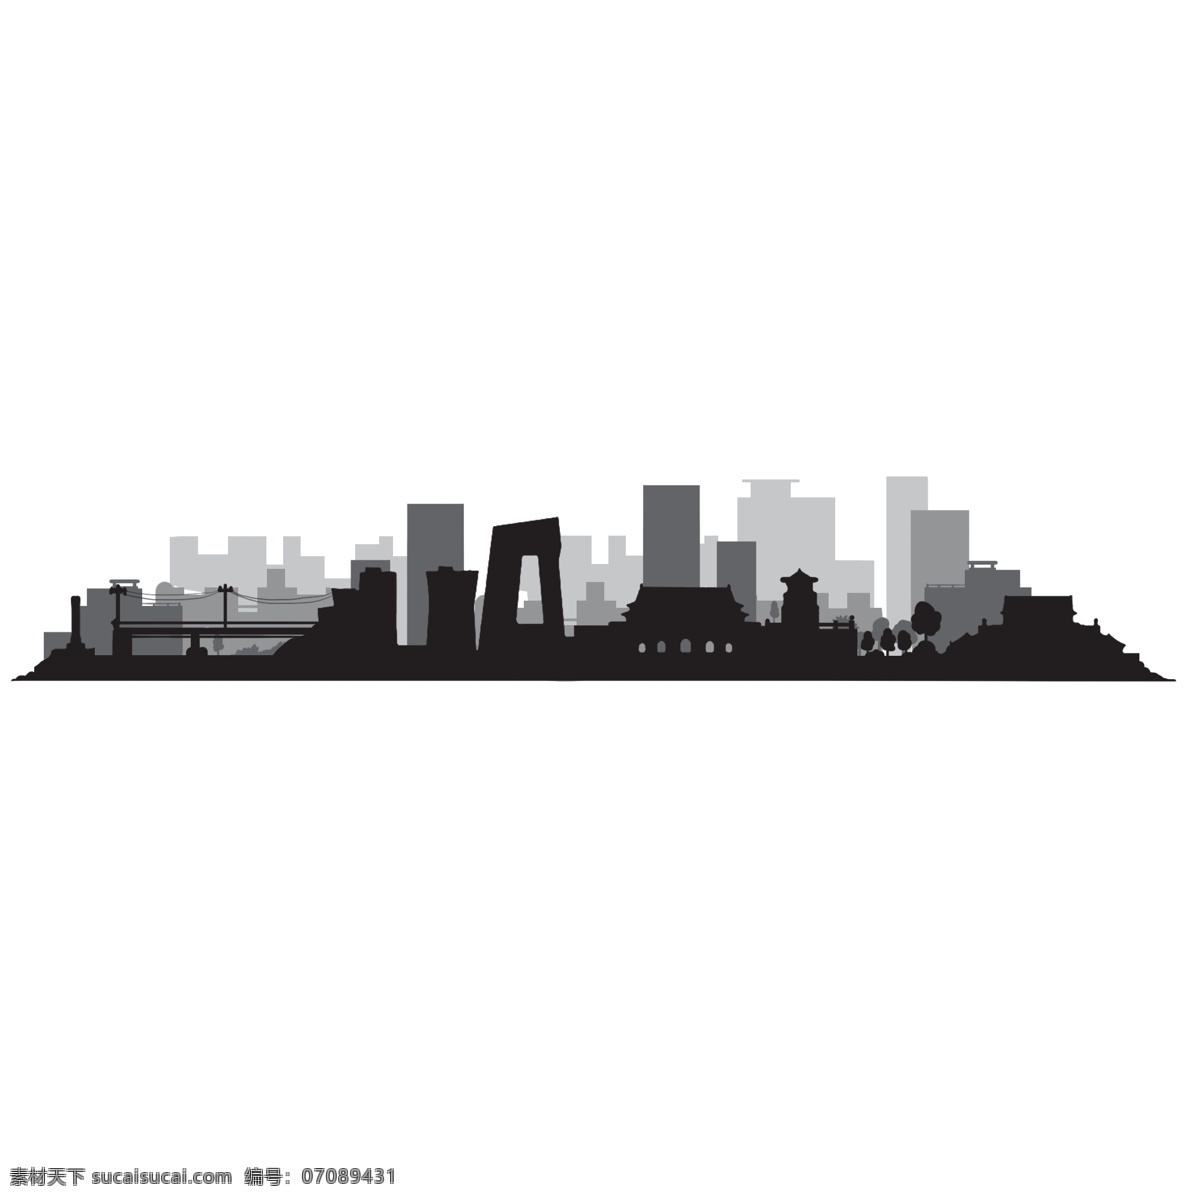 北京 城市 简约 剪影 黑色 城市剪影 简约风格 卡通的 现代城市 地标 层次感 免抠图 插画